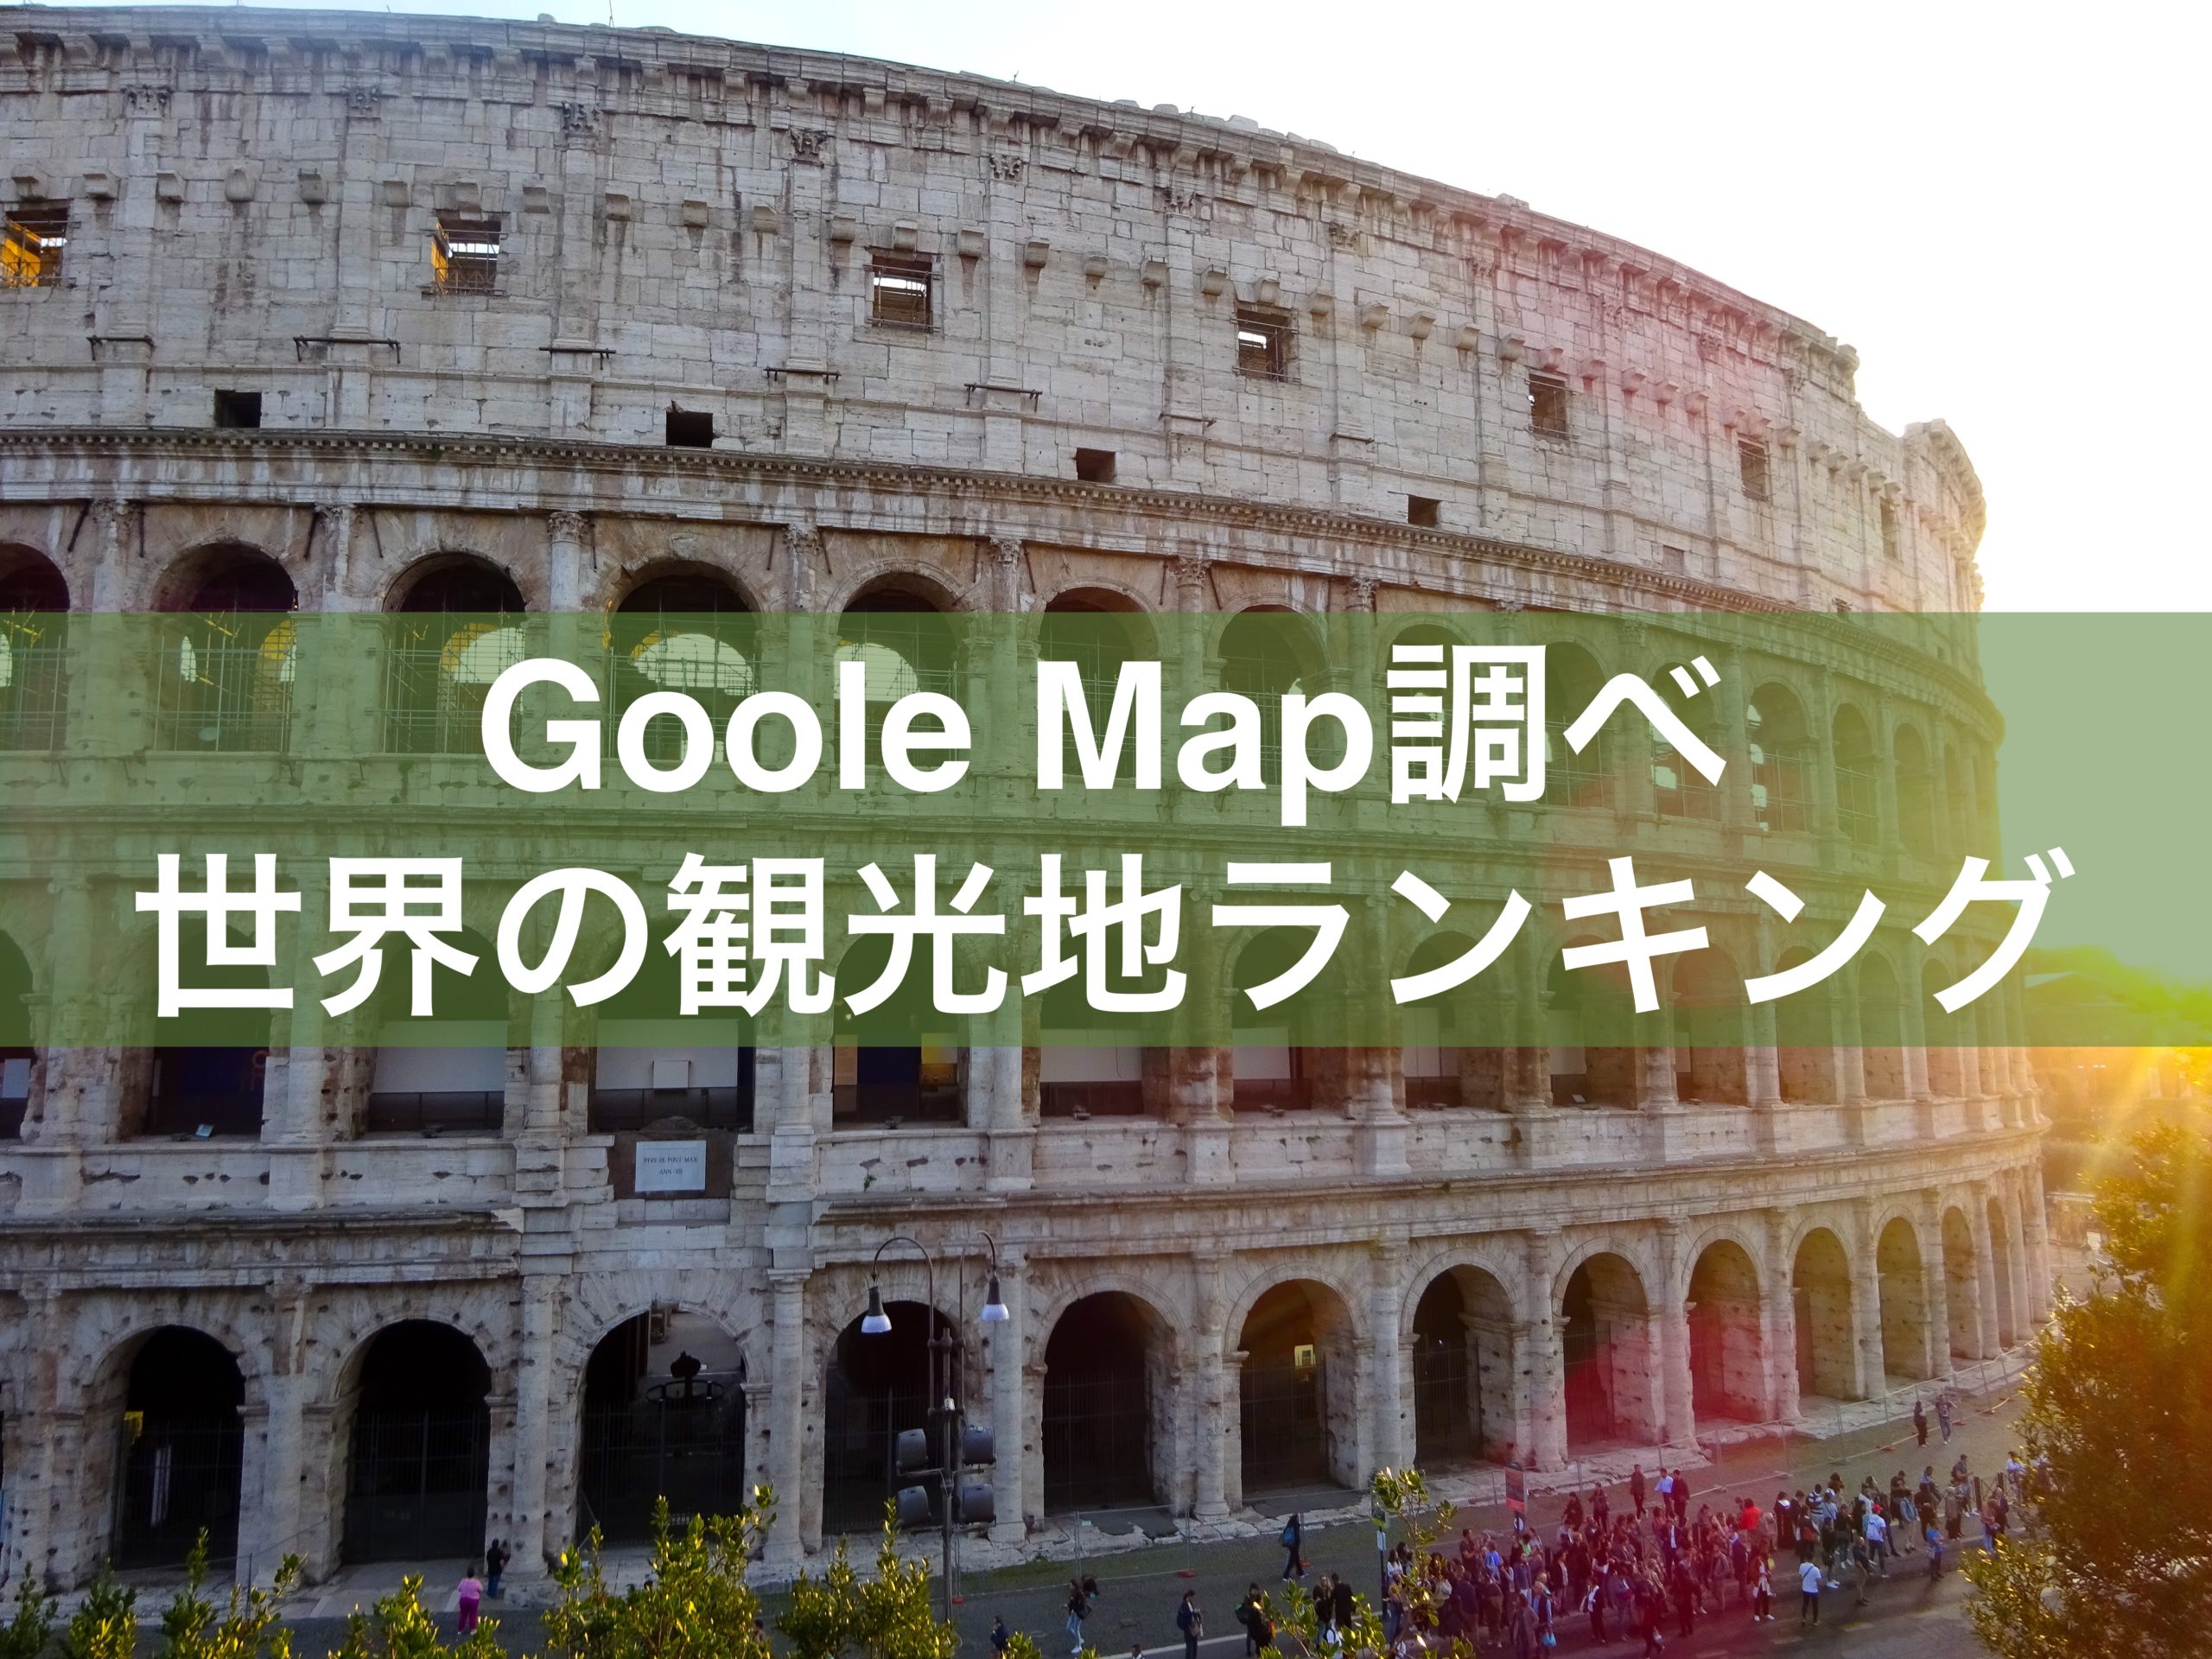 グーグルマップで見る 世界の観光地ランキングtop40 レビュー数１位は Ryoblog